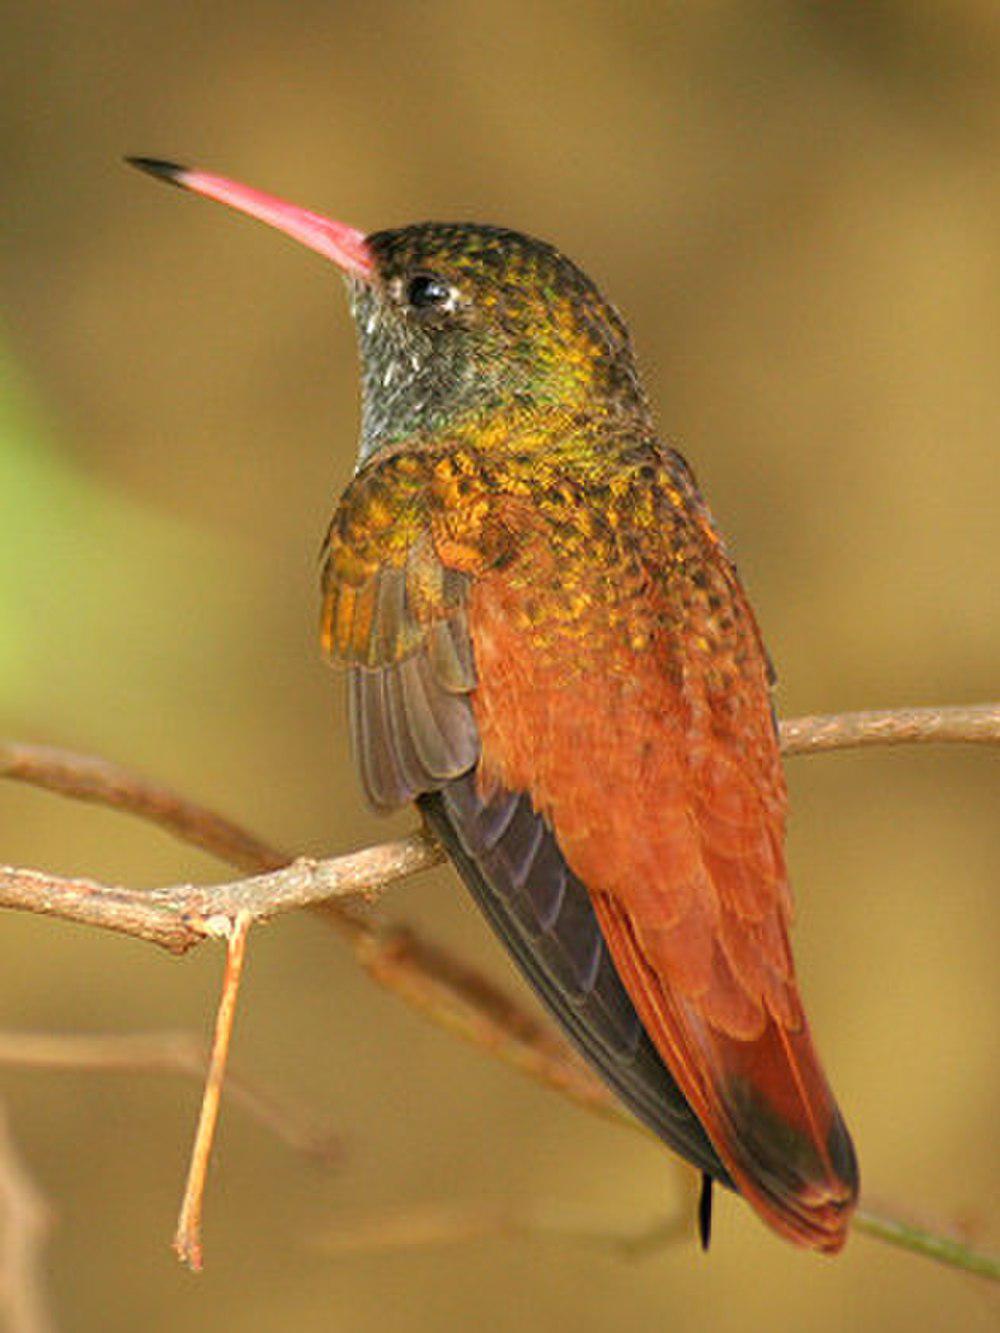 艳蜂鸟 / Amazilia Hummingbird / Amazilis amazilia